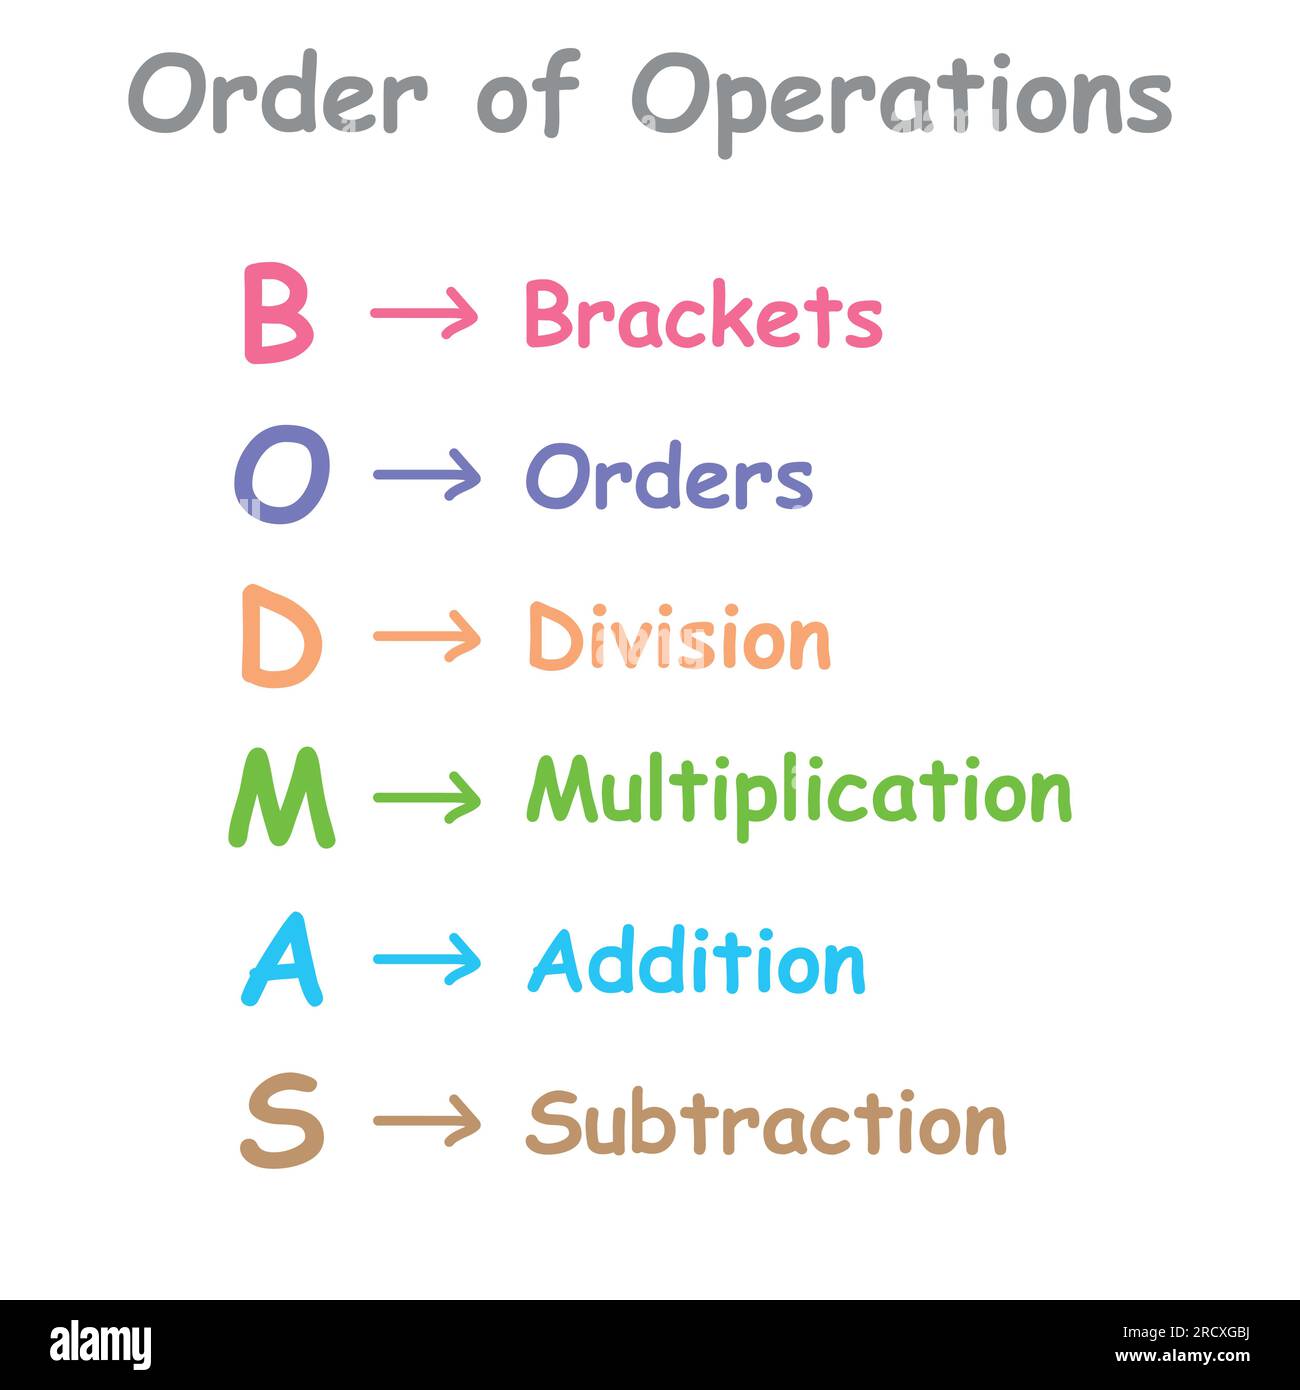 Ordonnancement des opérations mathématiques. Affiche de règle BODMAS ordre  des opérations. Crochets, ordre des puissances ou racines, division,  multiplication, addition A Image Vectorielle Stock - Alamy